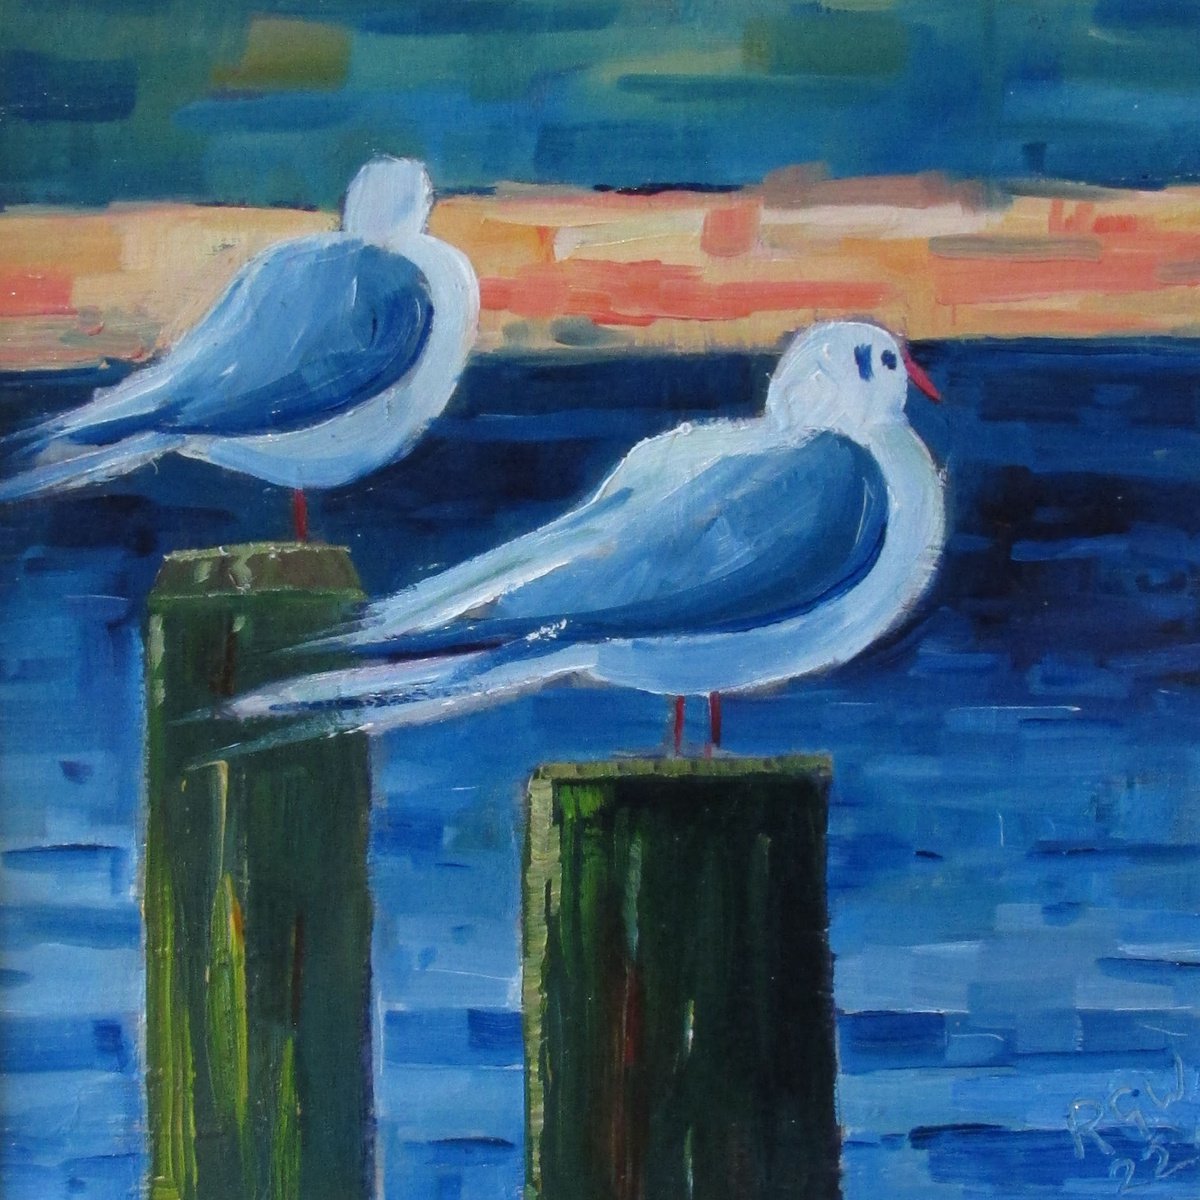 Solway Gulls by Robert Wells